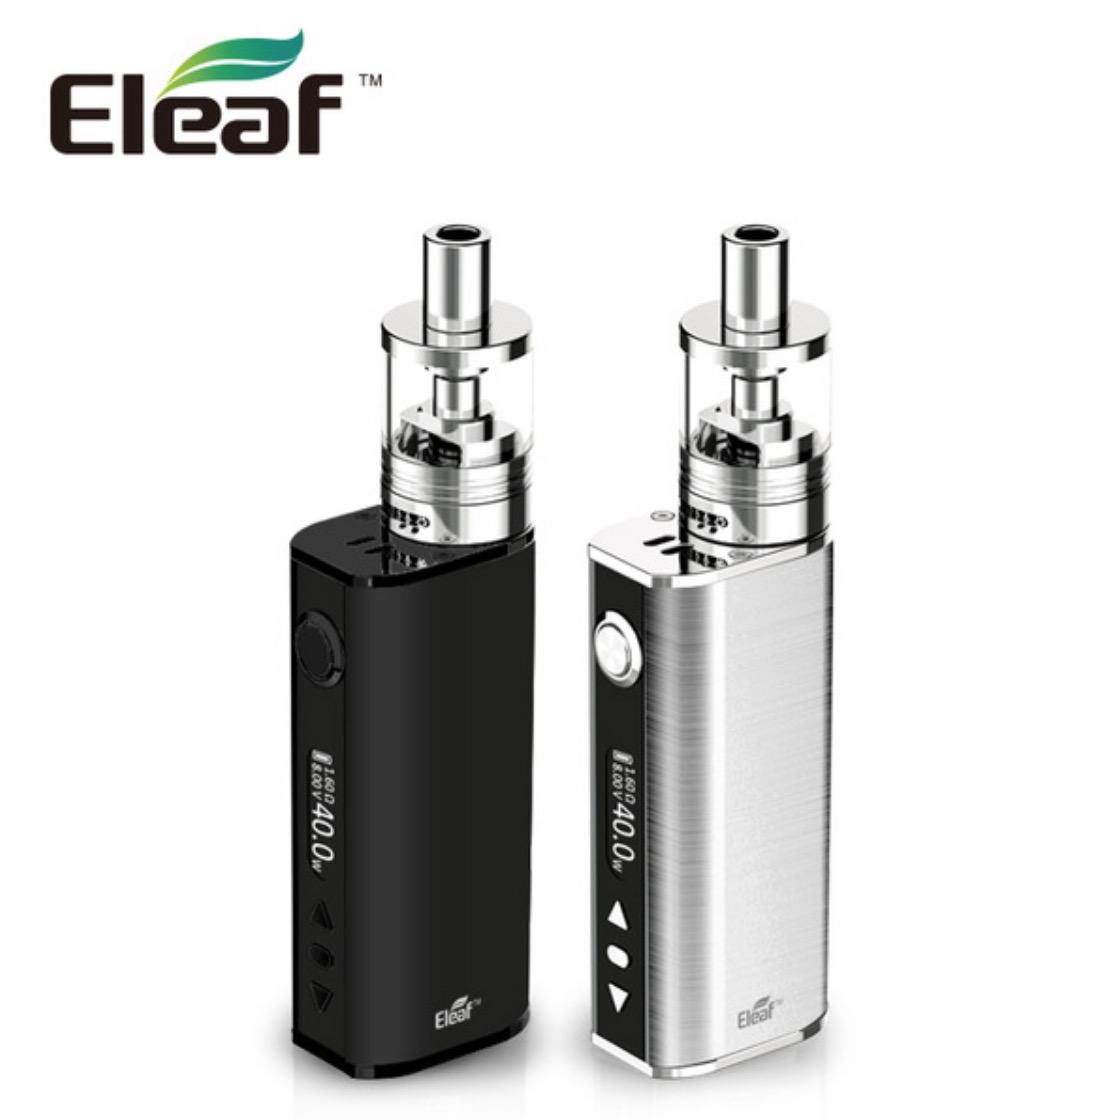 cigarette electronique - vapoteuse - e-cigarette eleaf TC40W GS Tank atomiseur